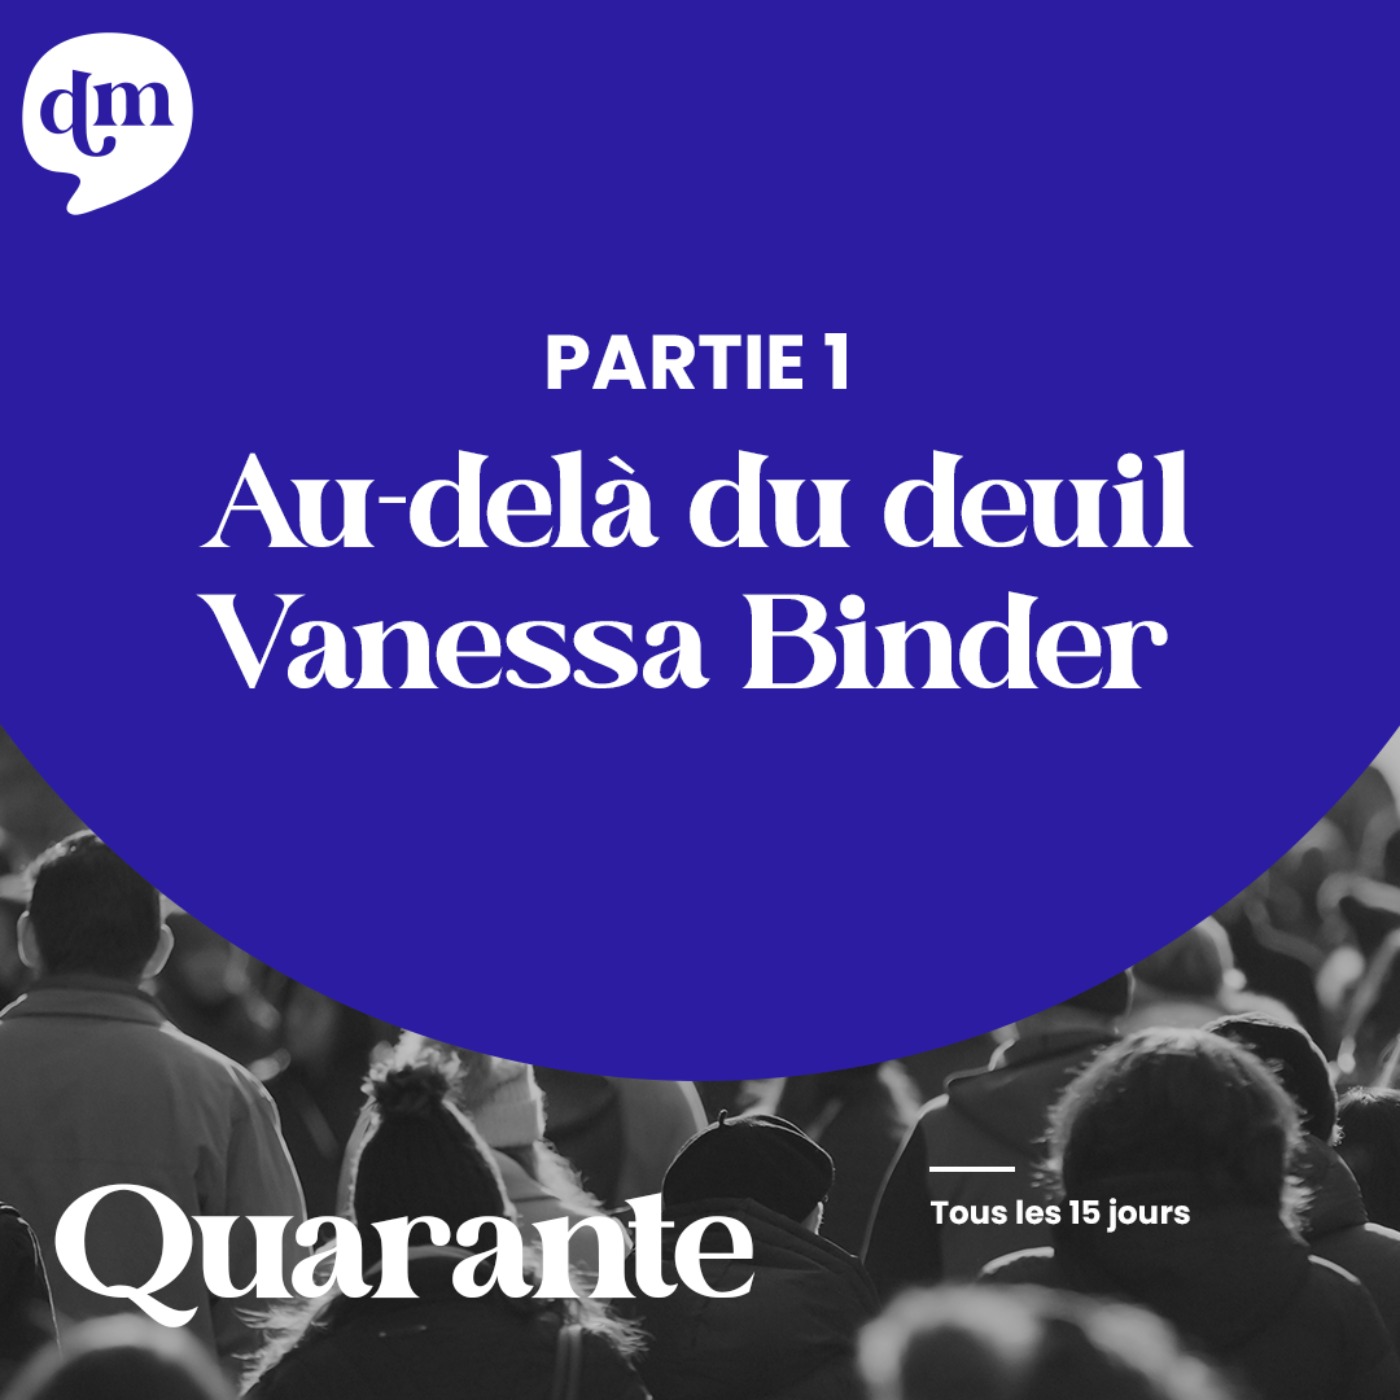 Au-delà du deuil - Vanessa Binder - 1ère partie